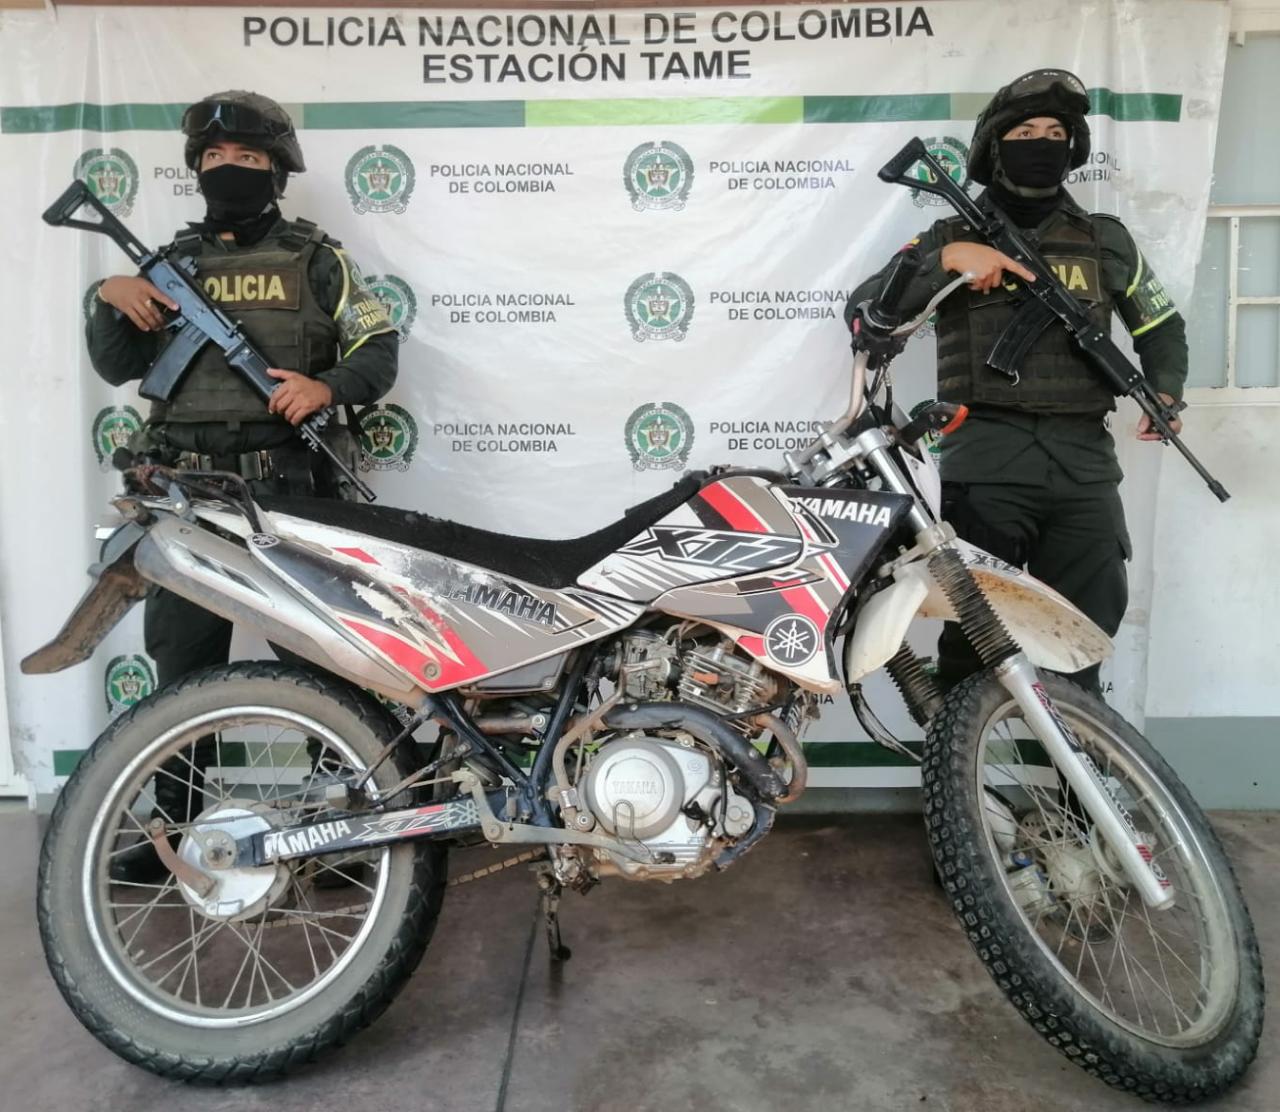 Contundentes golpes contra el crimen organizado y la delincuencia en el departamento Arauca